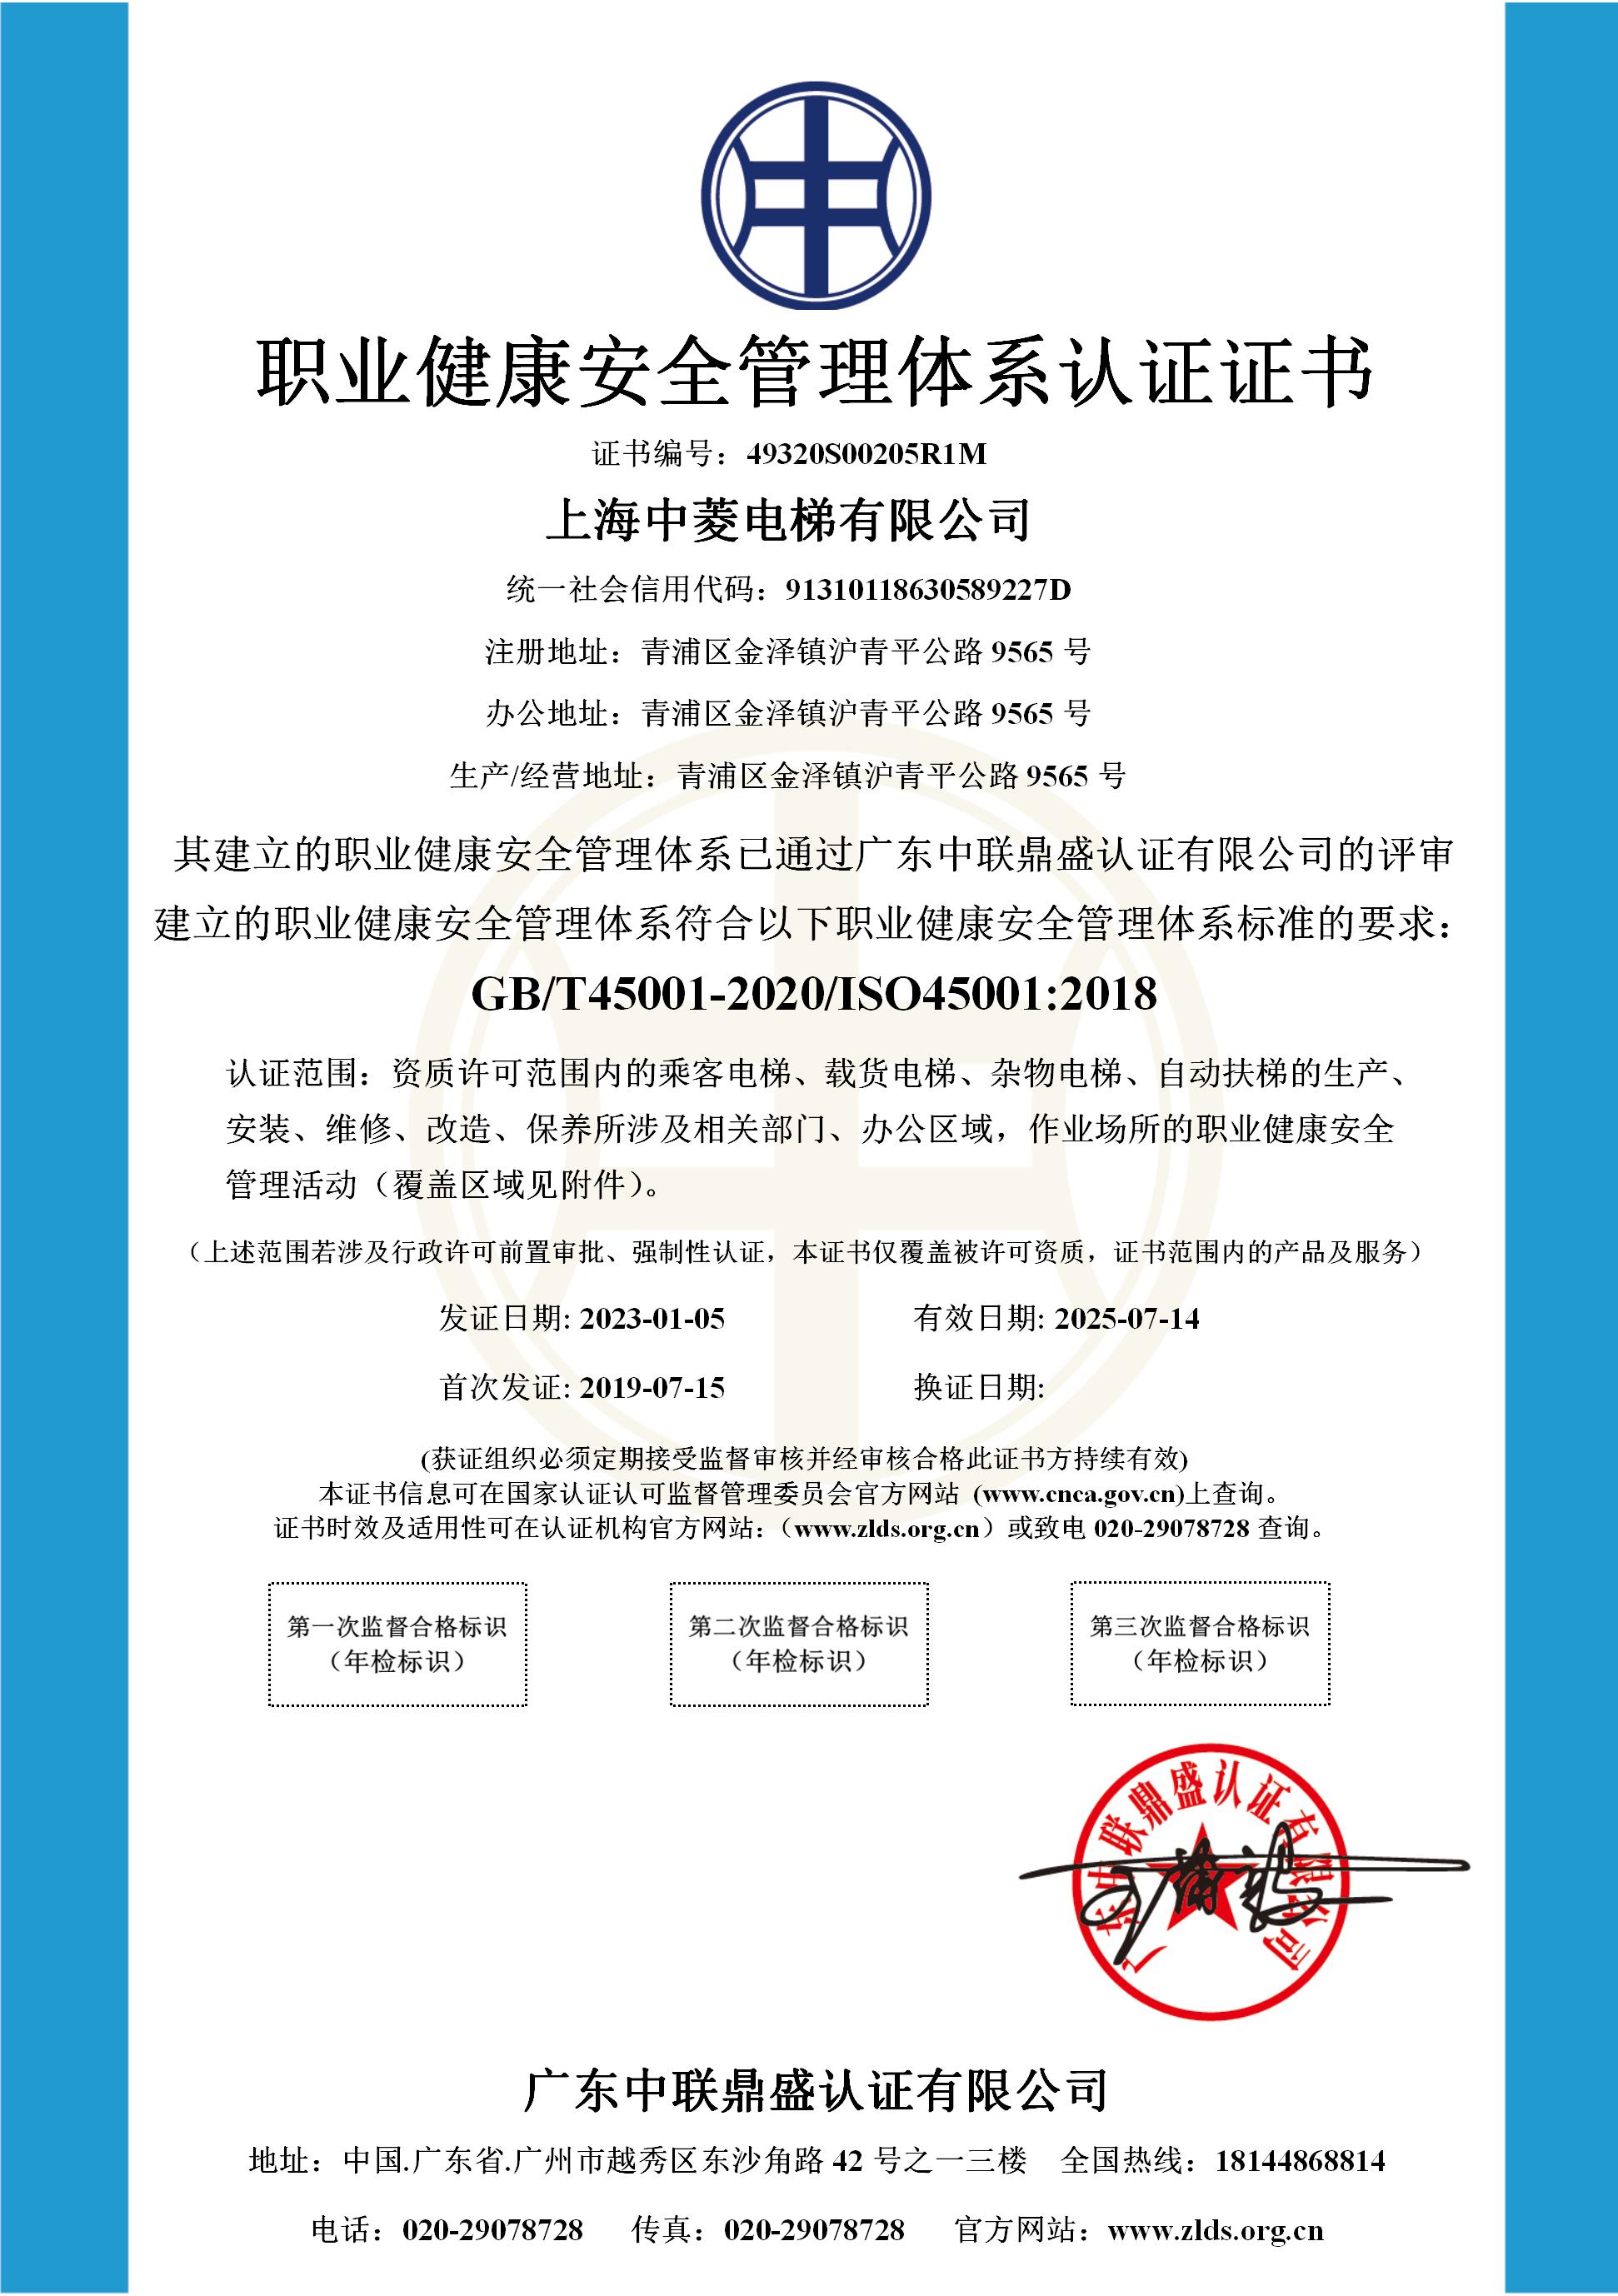 5、职业健康安全管理体系认证证书——中菱电梯_01.jpg